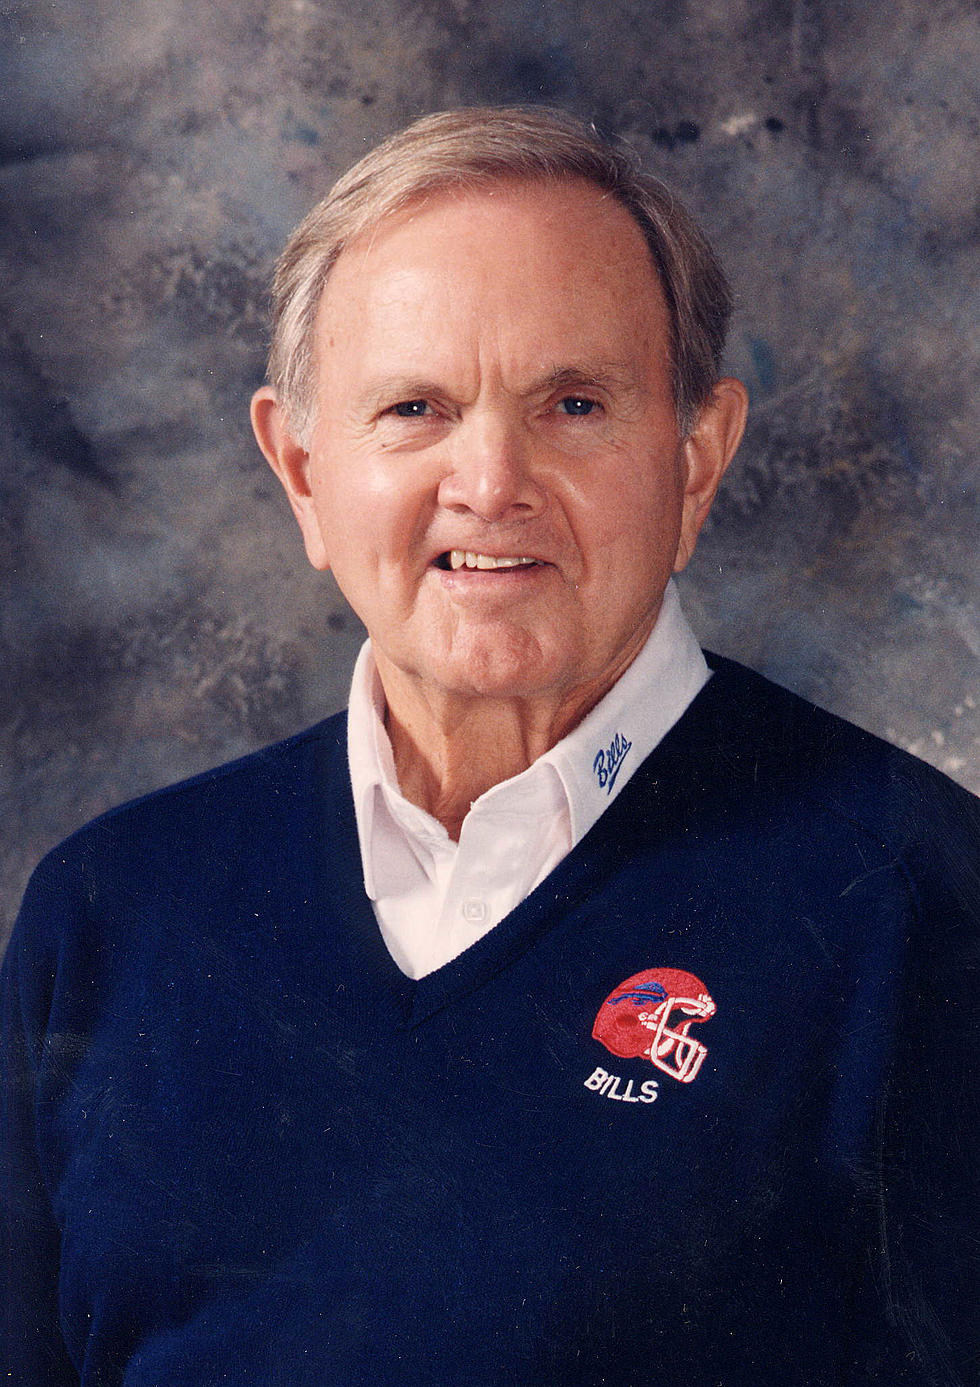 Bills Owner Ralph Wilson Dies